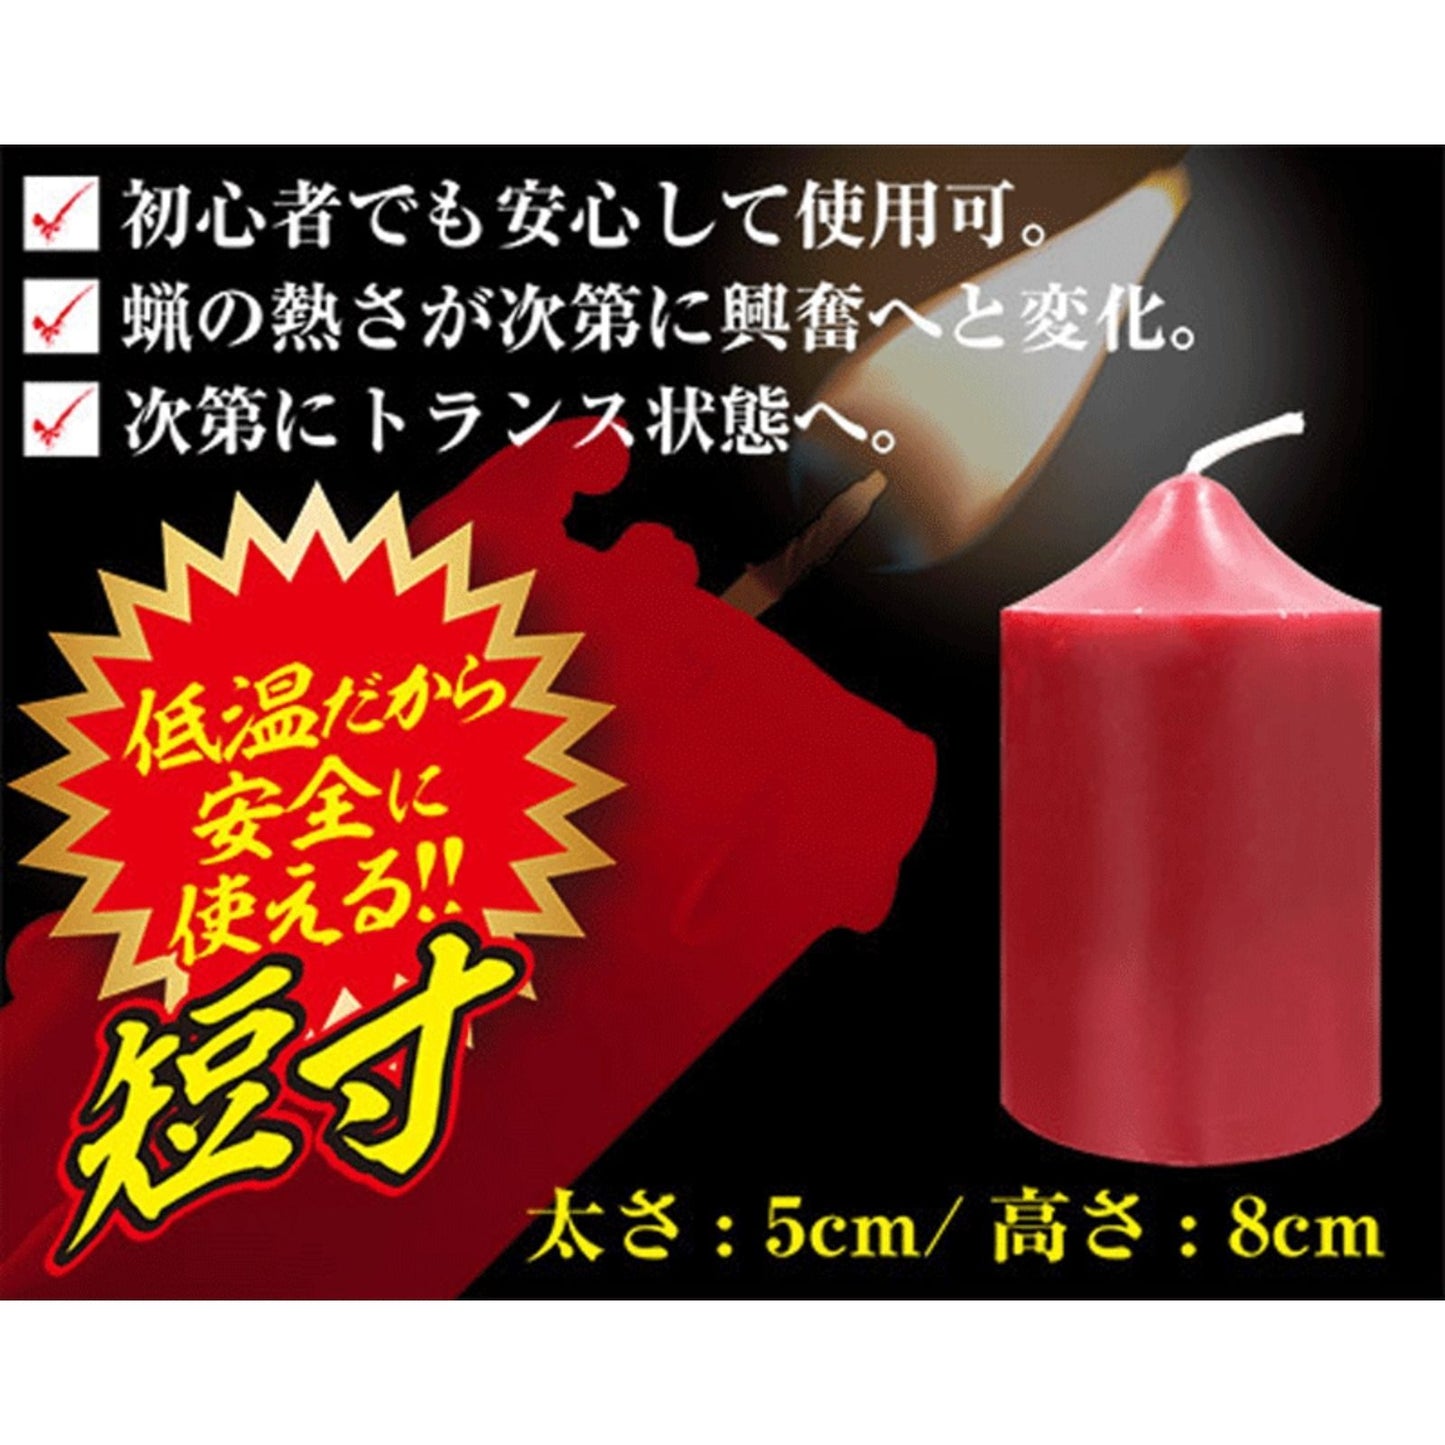 A-ONE SM 低溫蠟燭 短寸 低溫蠟燭 購買